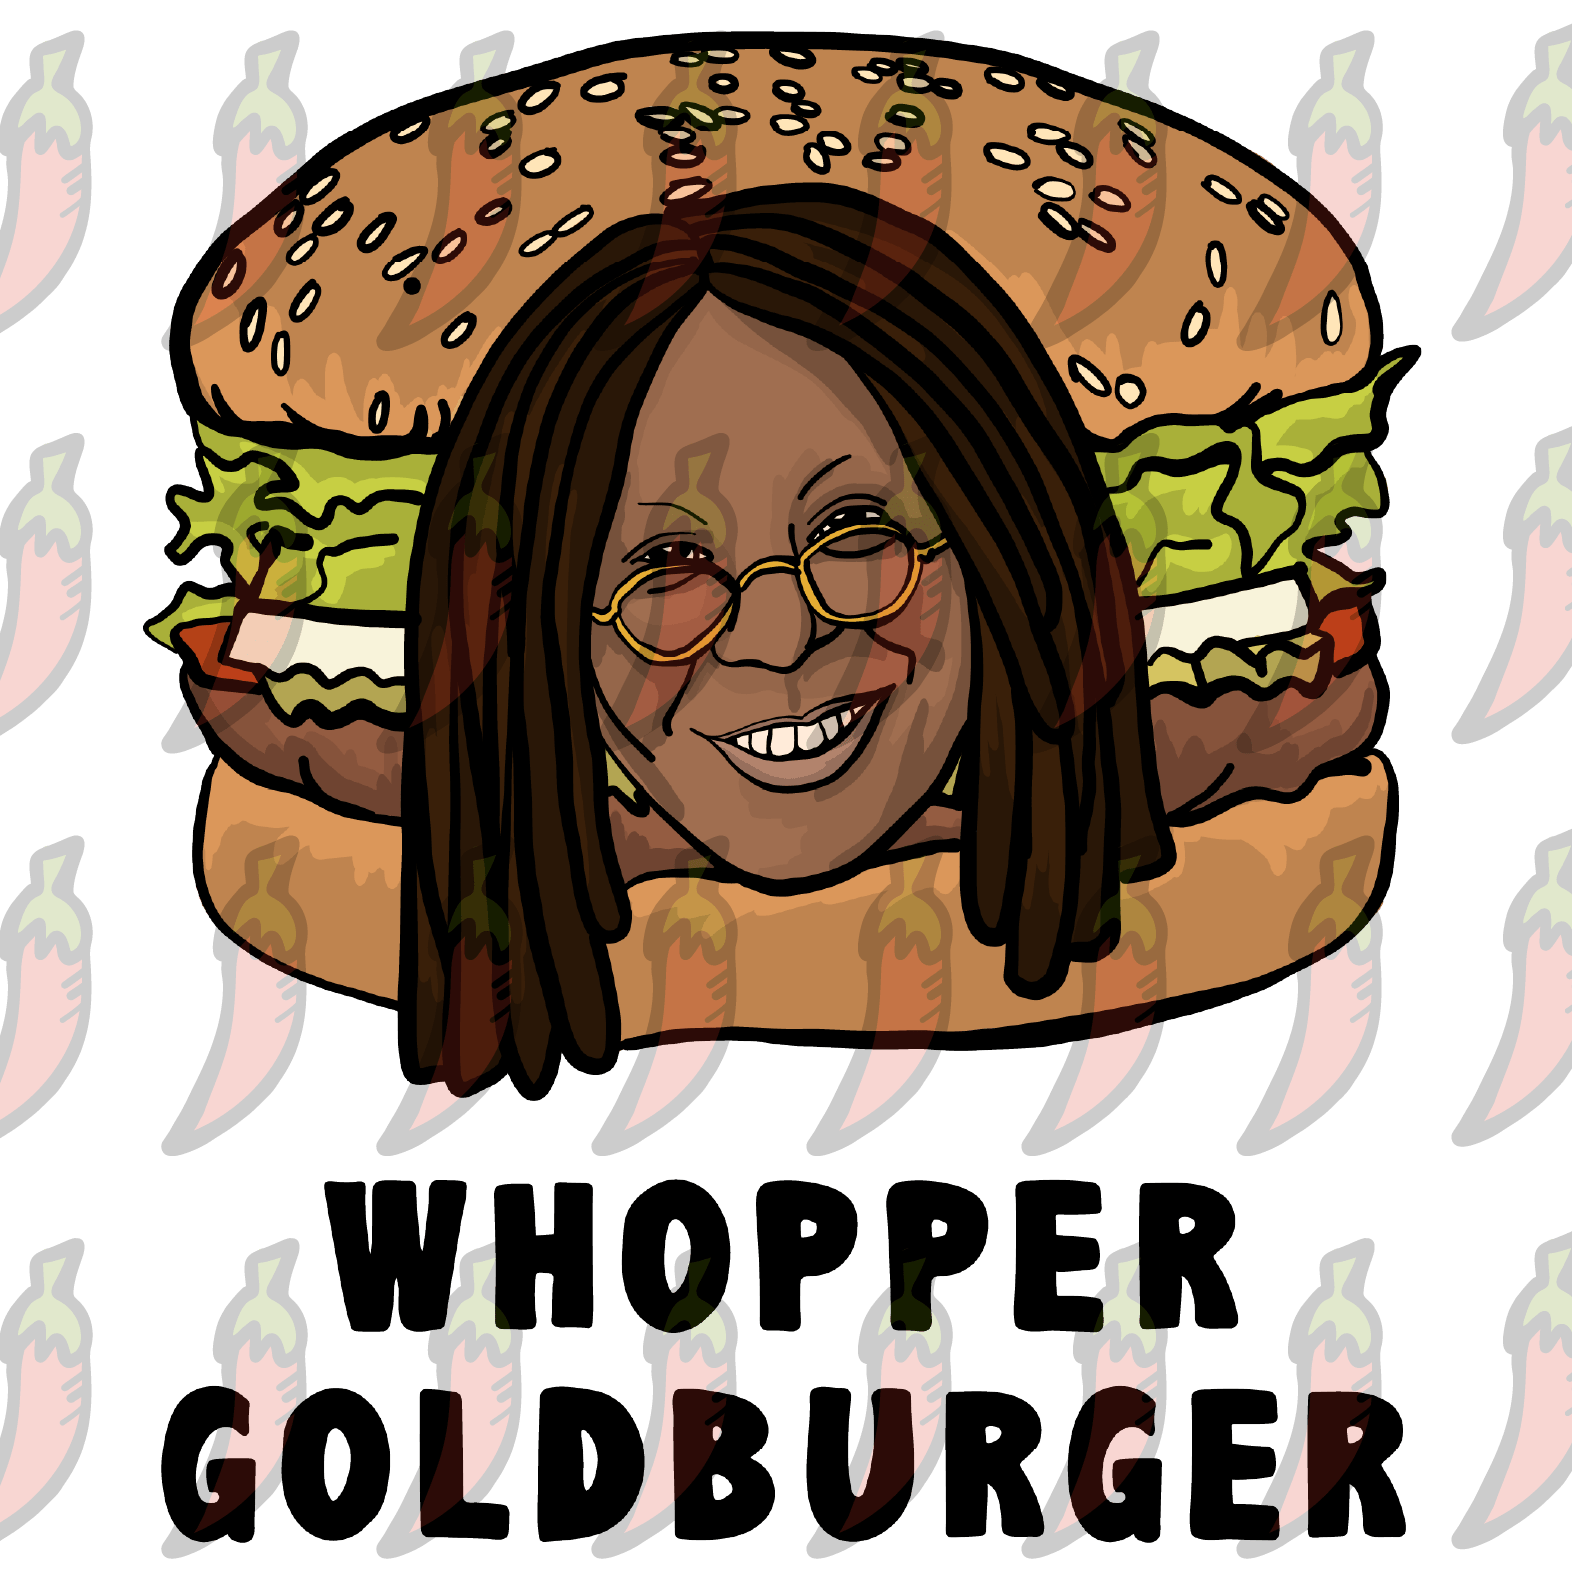 Whopper Goldburger 🍔 - Women's T Shirt